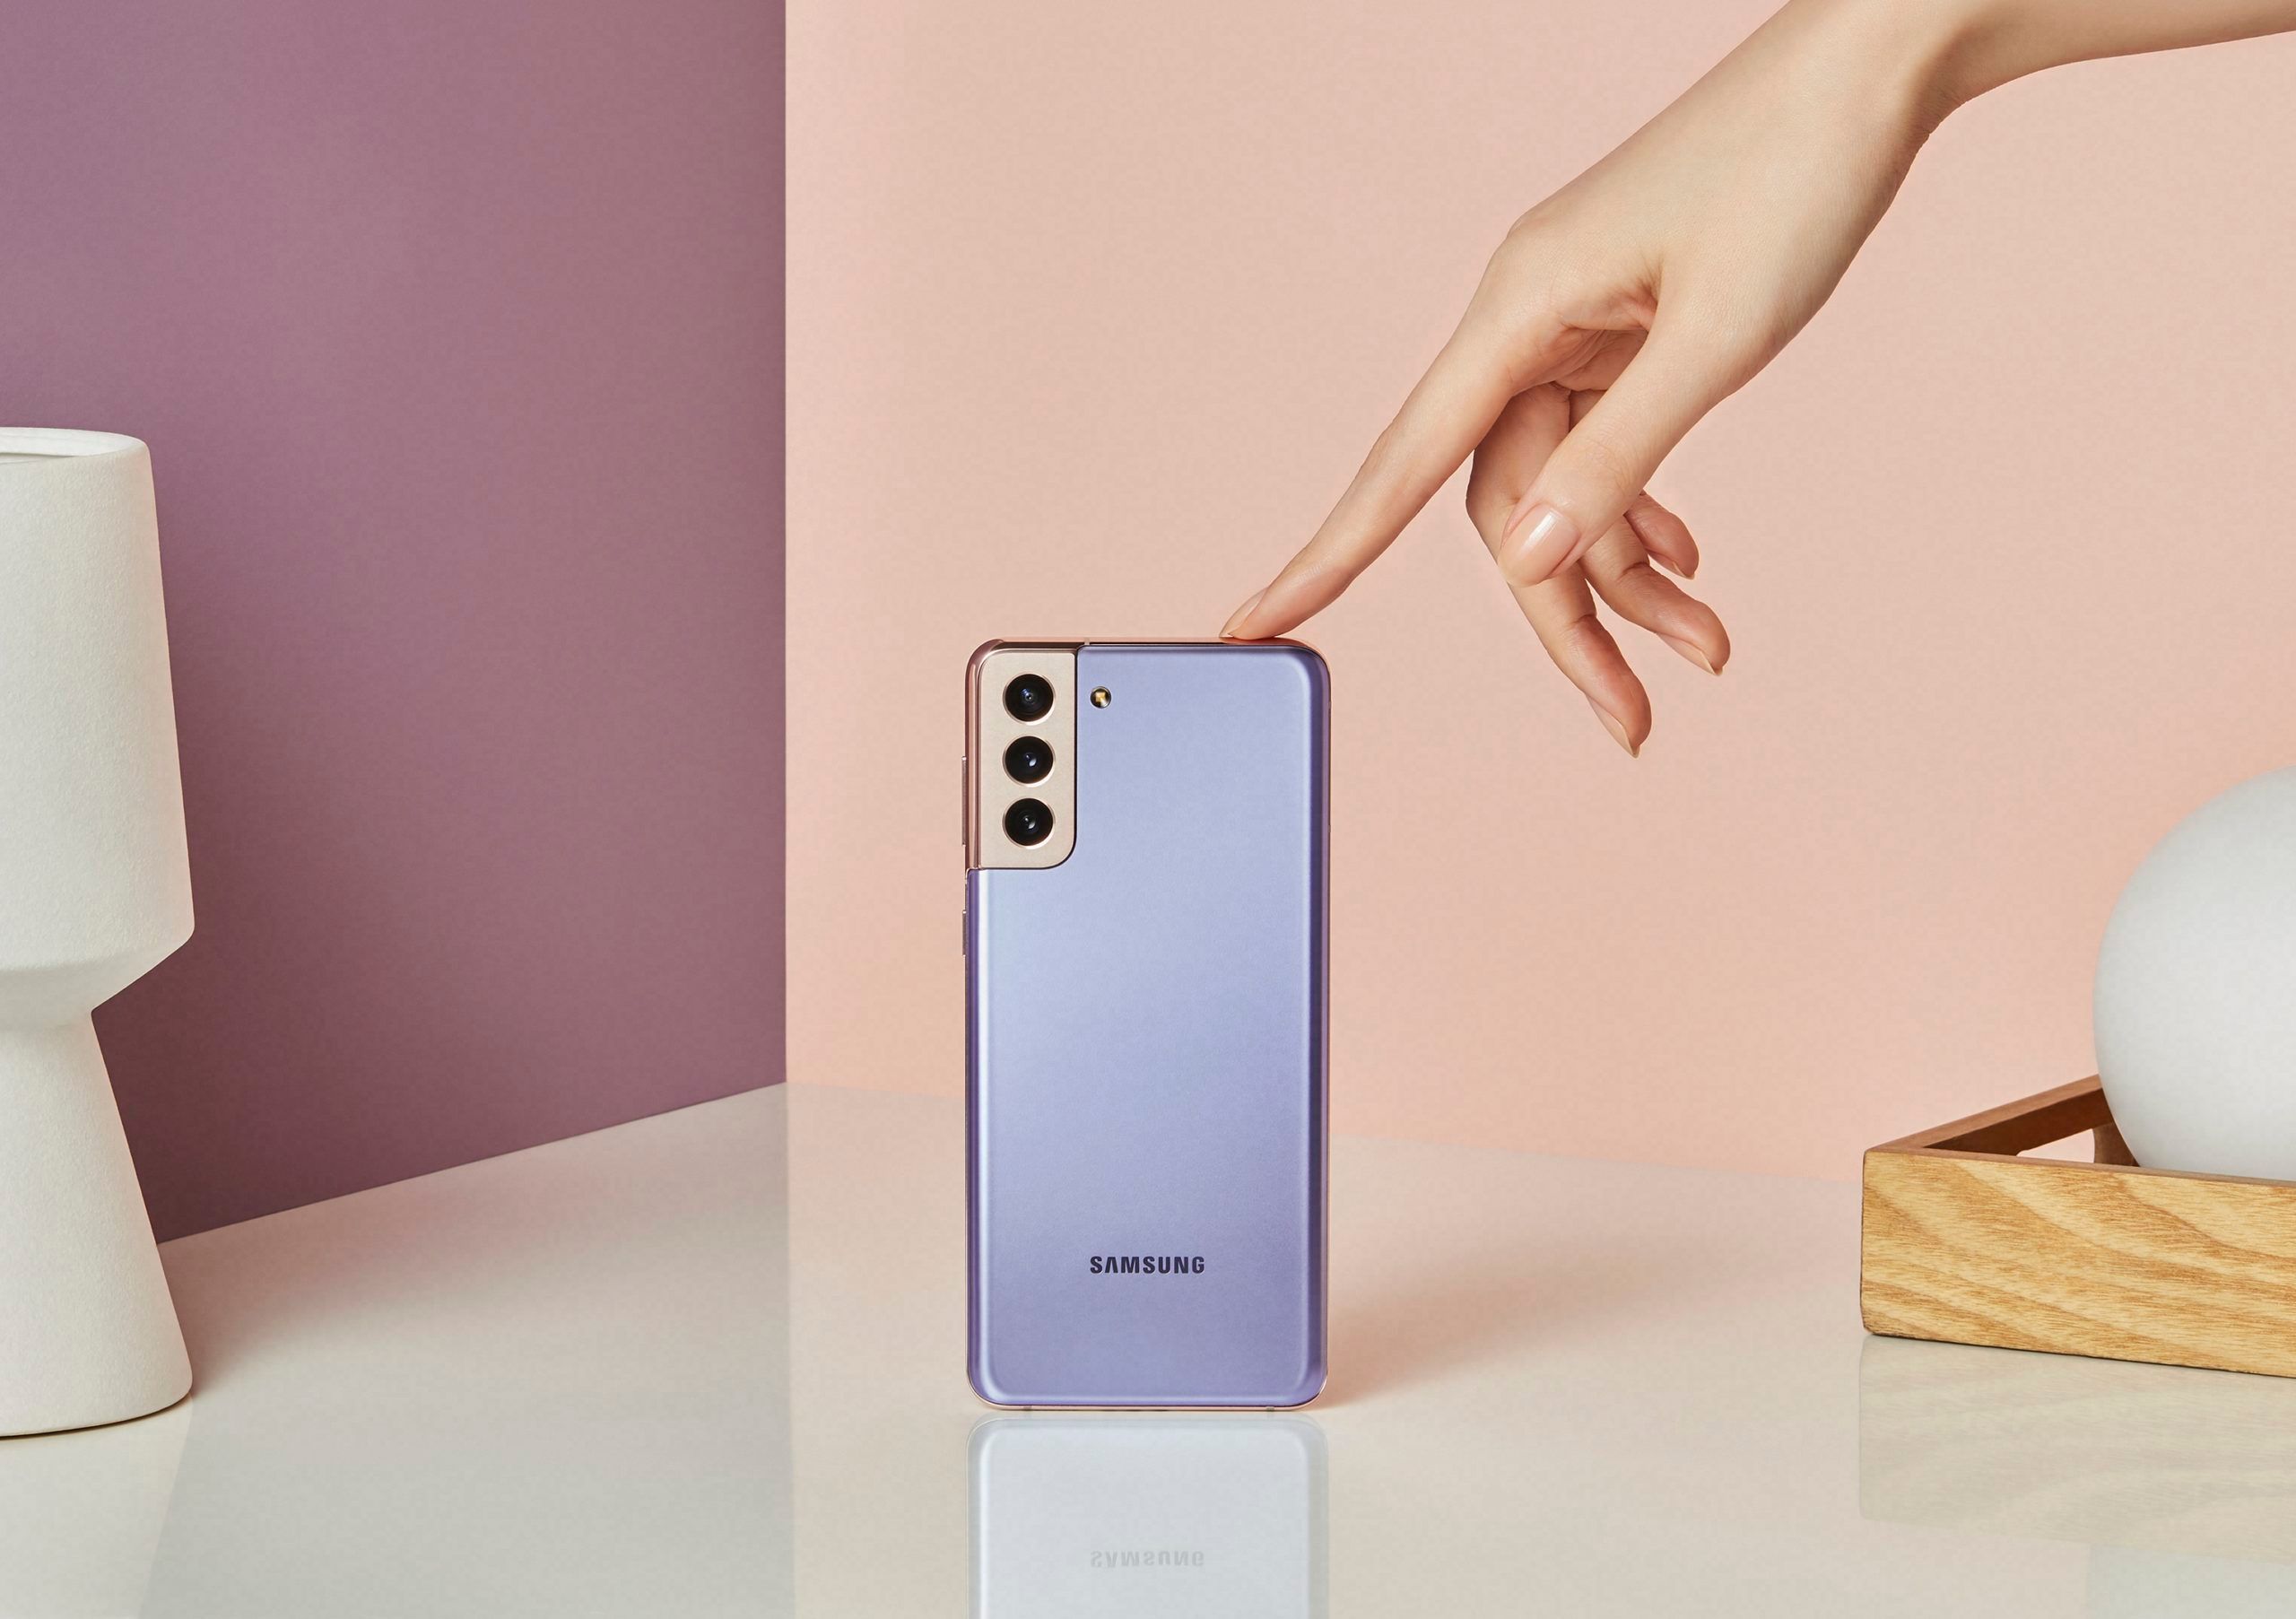 Teardown: Samsung Galaxy A32 5G smartphone